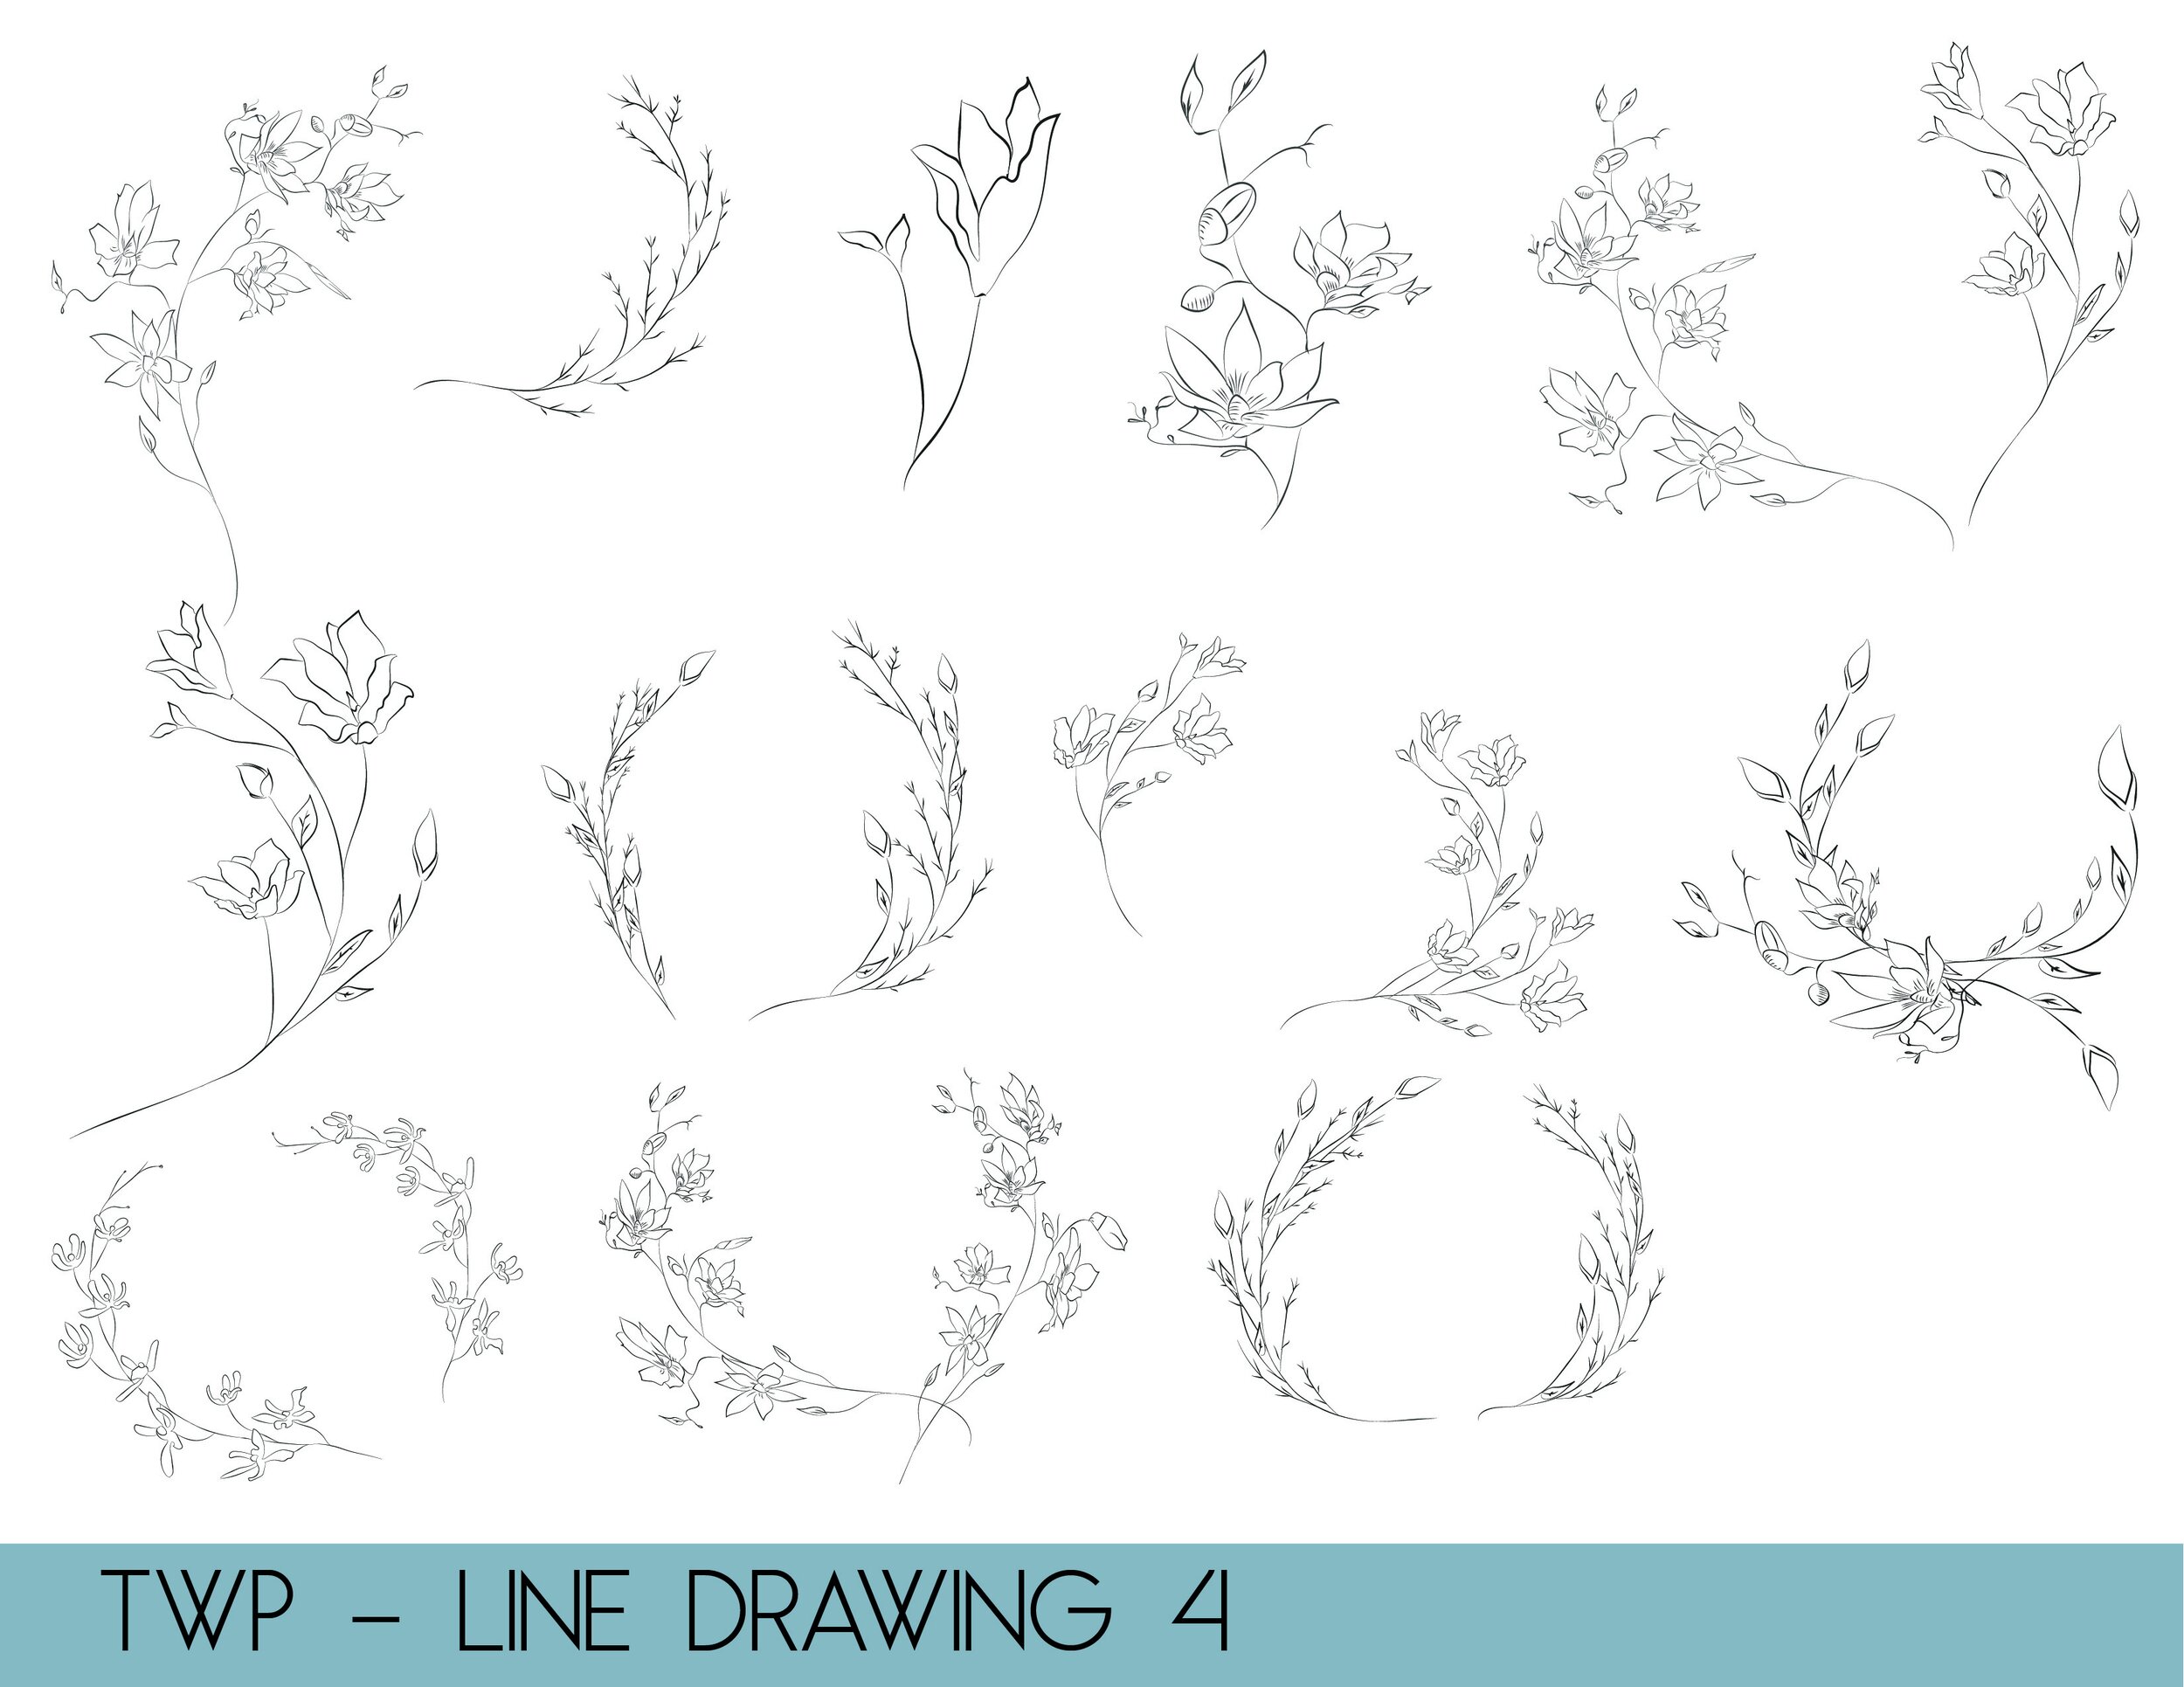 line drawings - website4.jpg